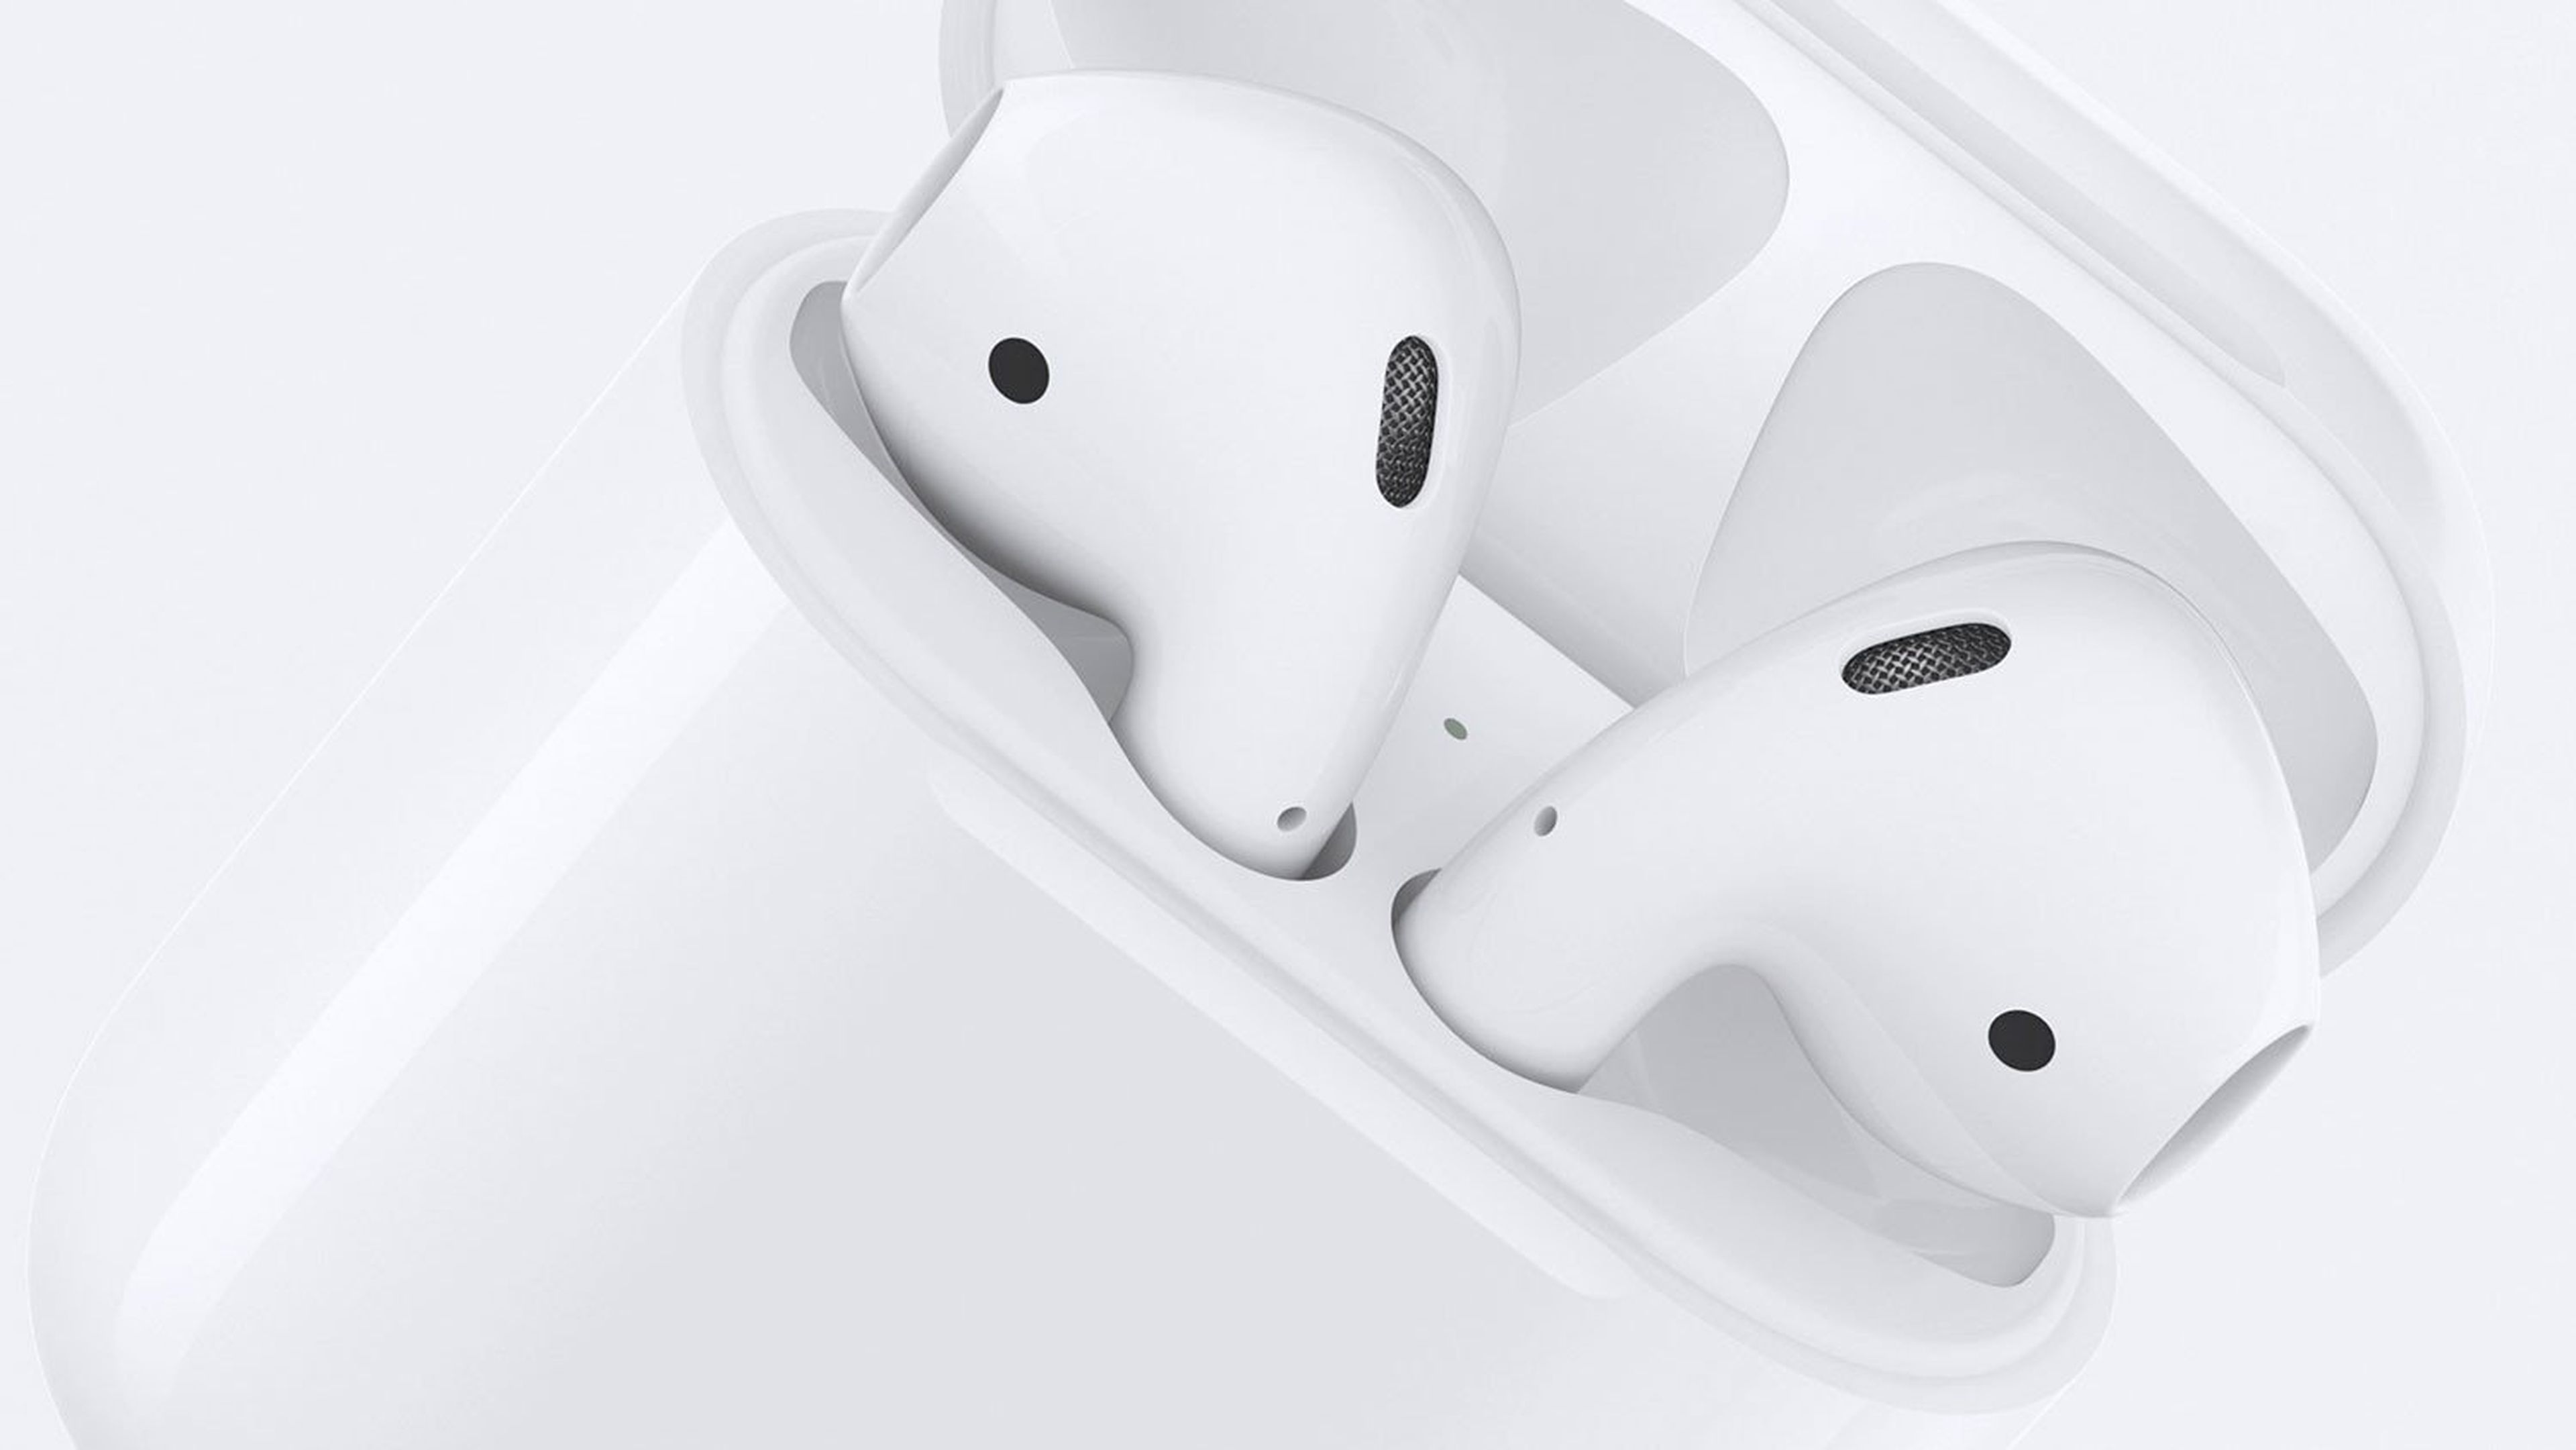 Apple prepara nuevos AirPods más caros y completos para 2019